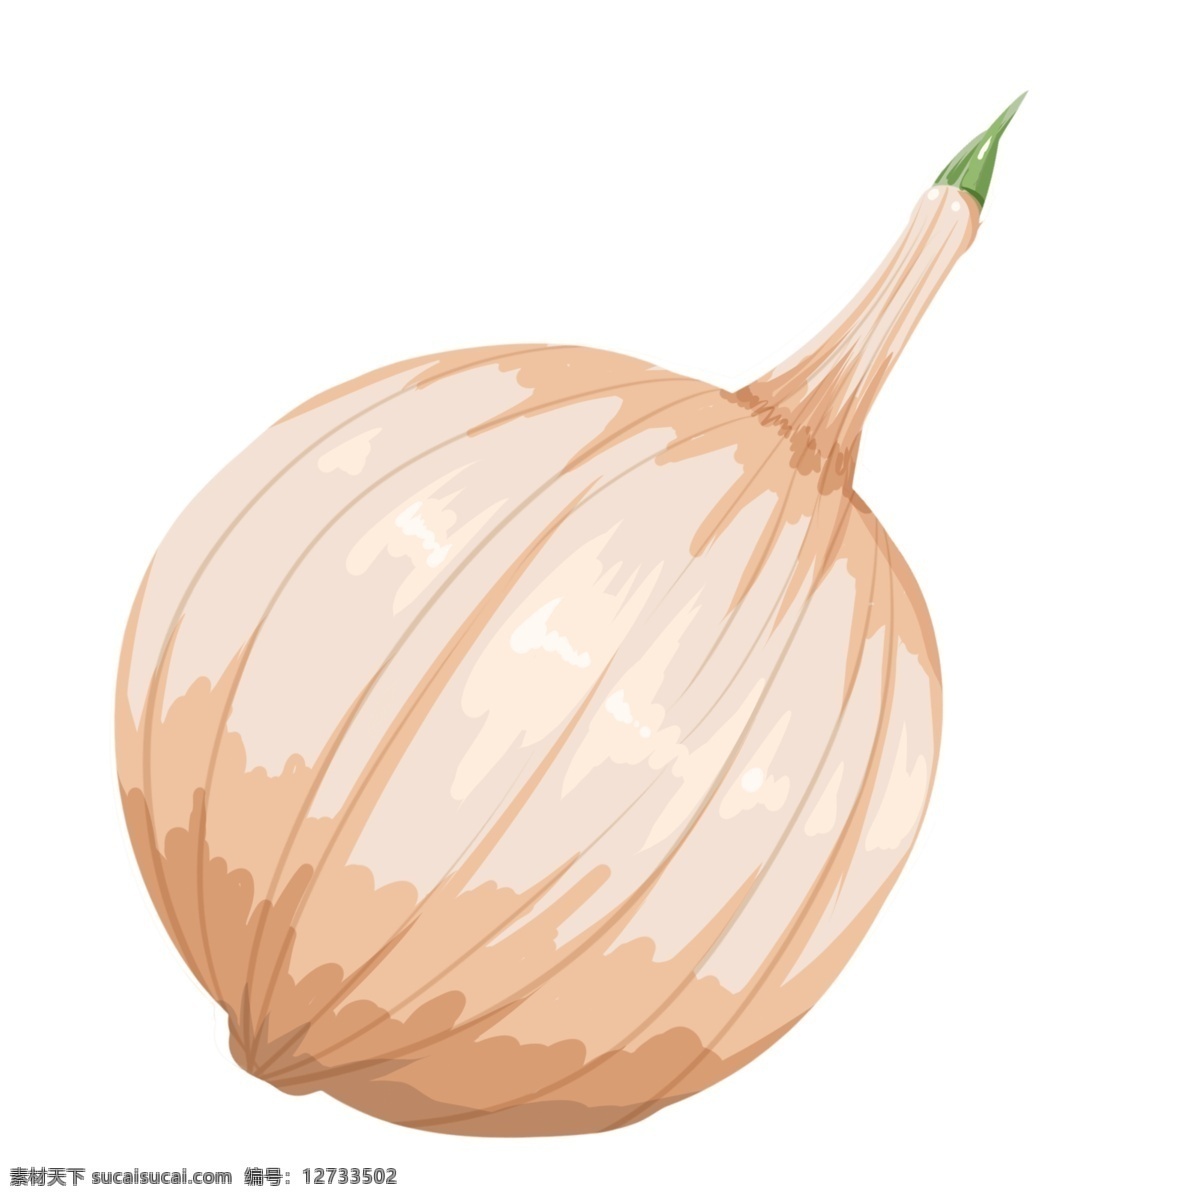 手绘 蔬菜 洋葱 插画 新鲜的蔬菜 卡通插画 手绘蔬菜插画 白色的洋葱 圆圆的洋葱 辛辣的洋葱